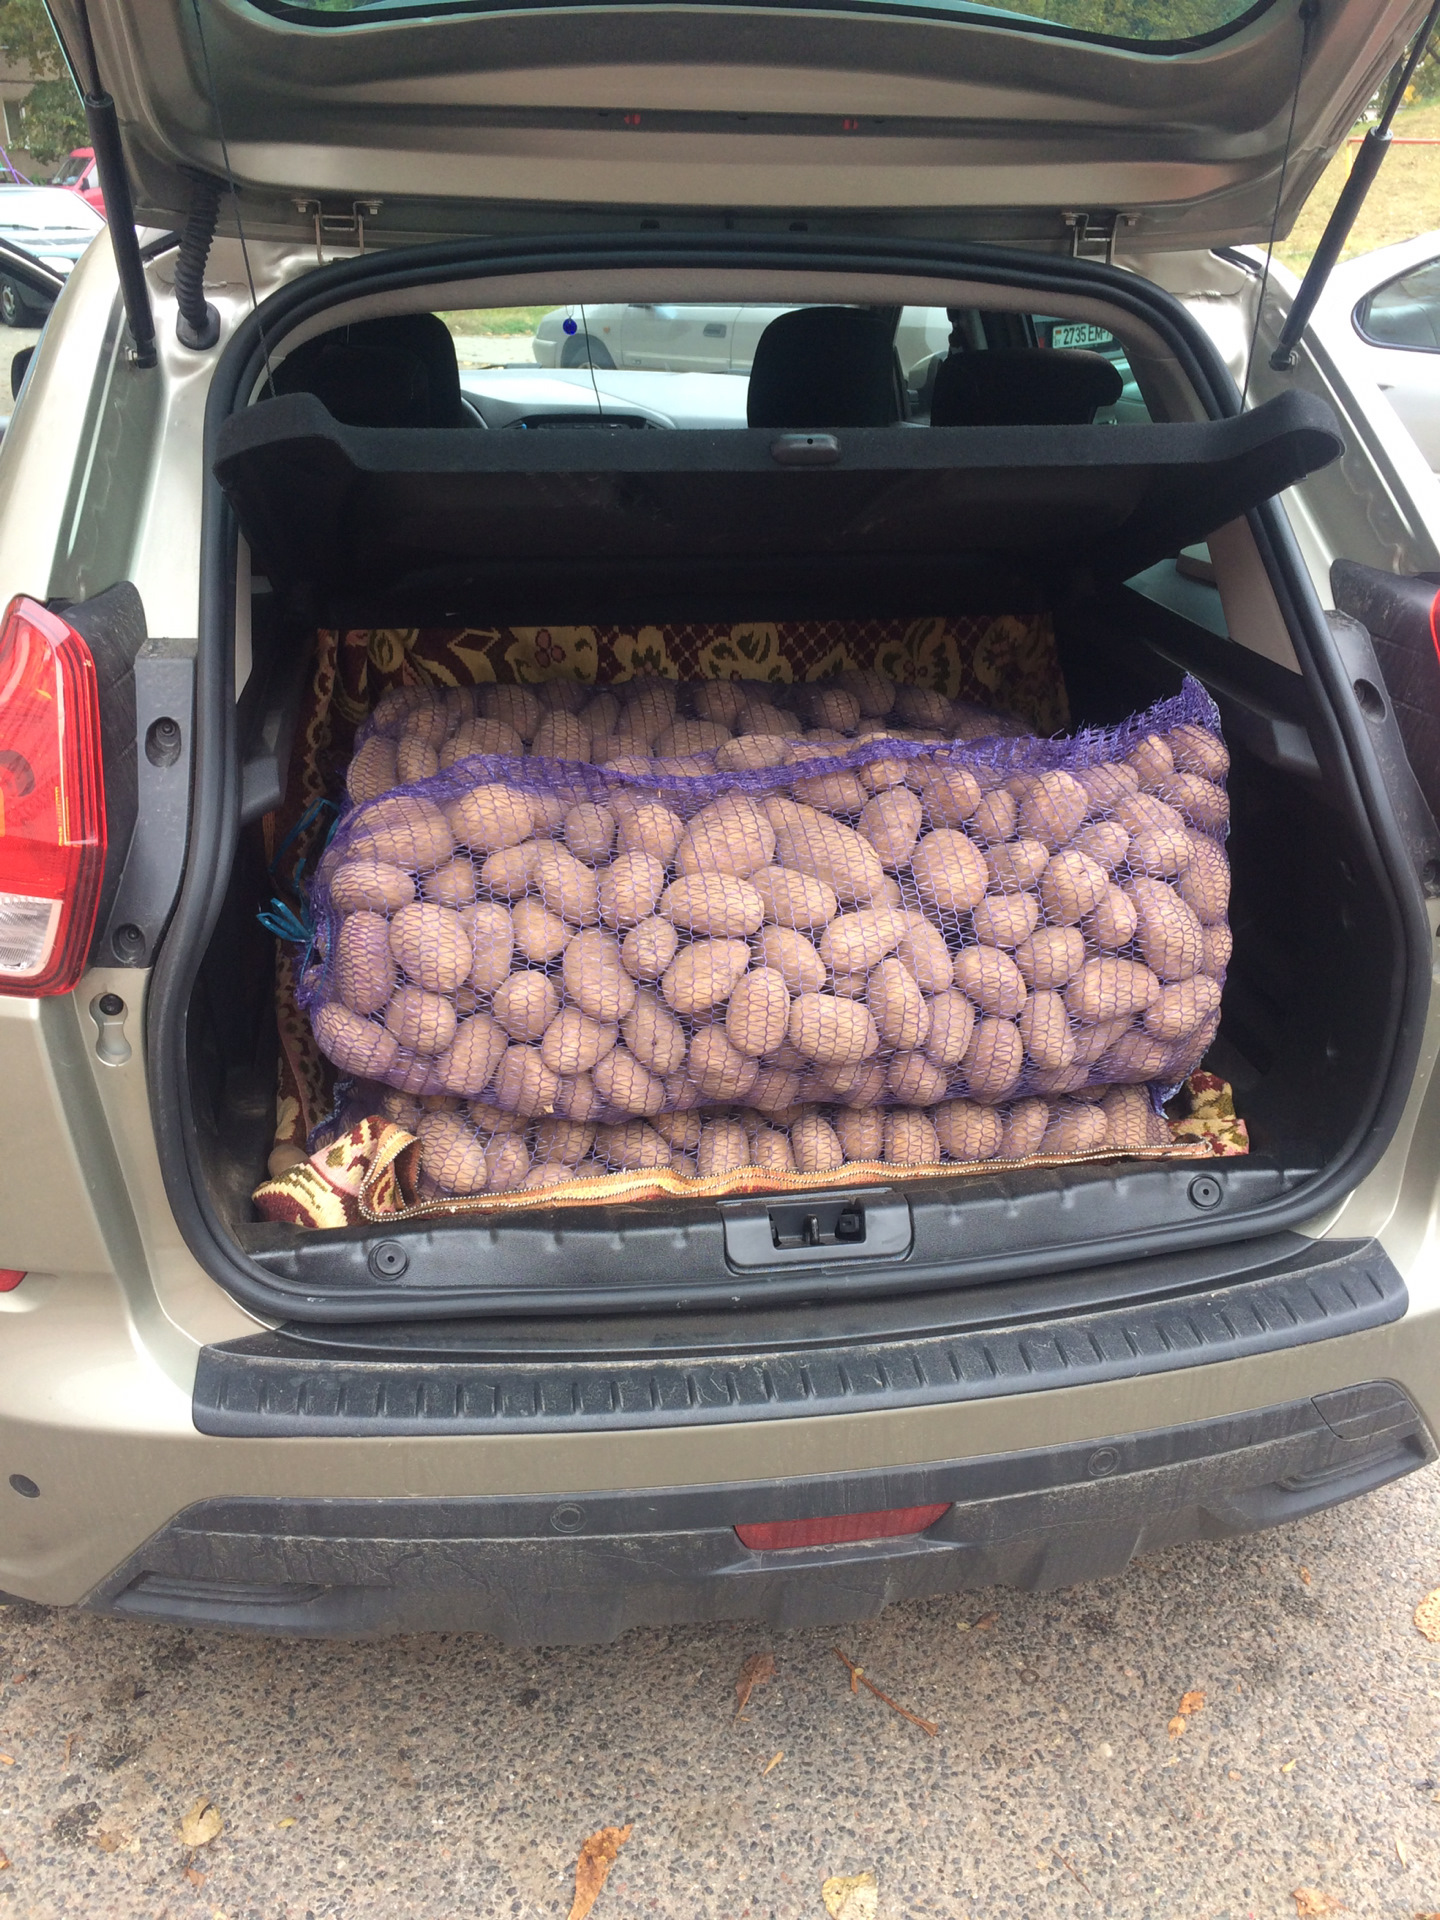 Мешок картошки сколько кг. Картошка в багажнике. Мешок в багажнике. Полный багажник картошки. Фрукты в багажнике.